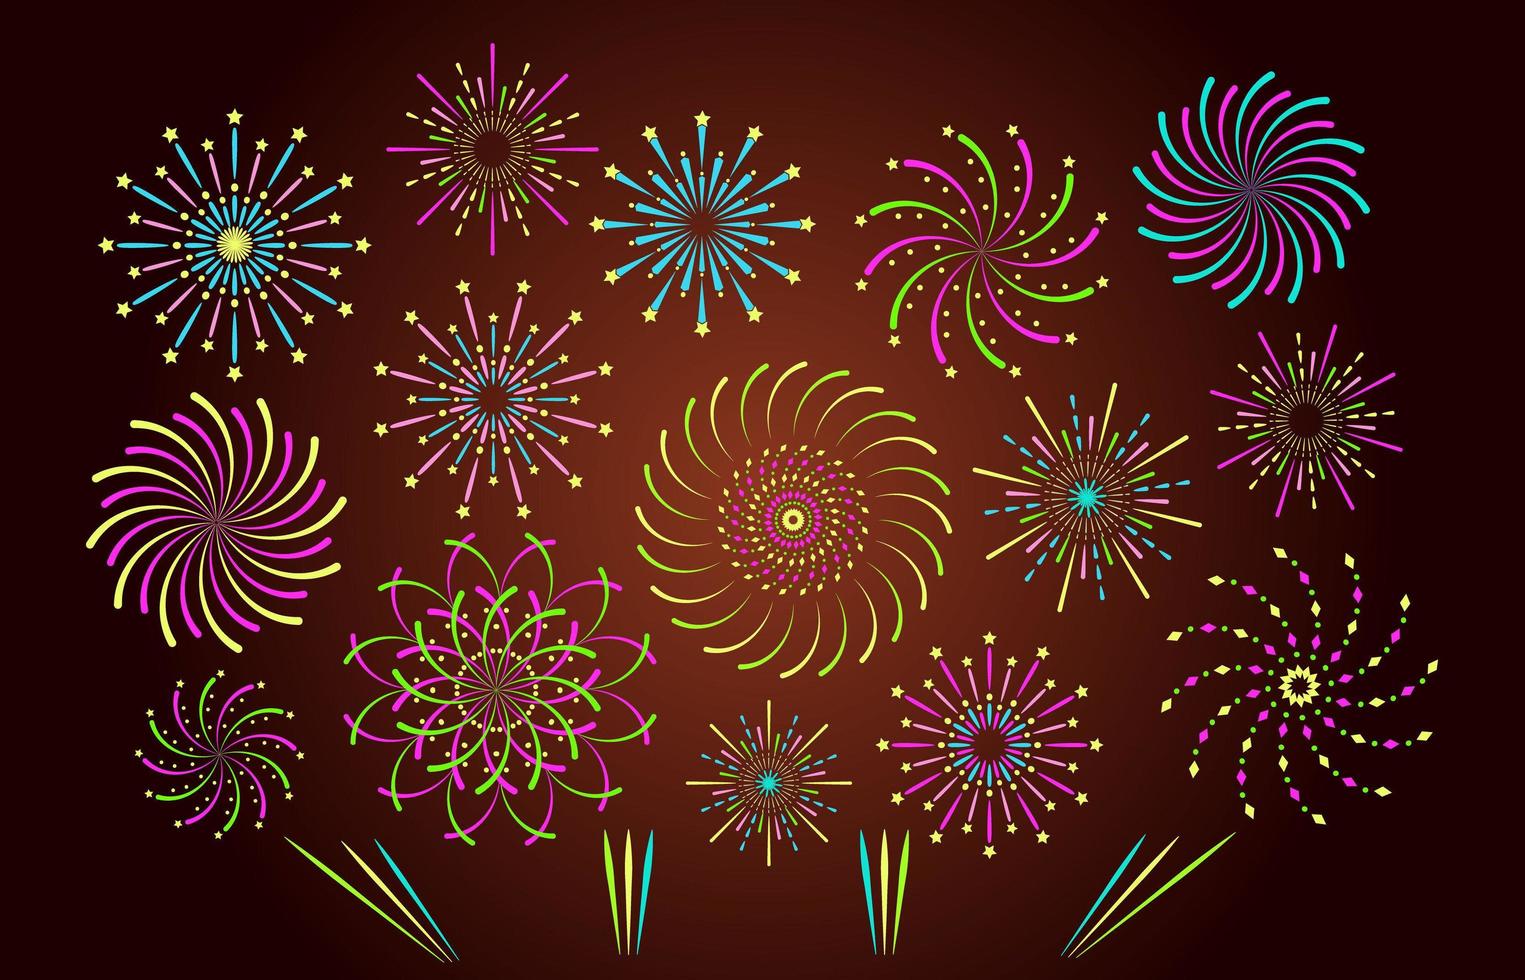 fuochi d'artificio o fuochi d'artificio su sfondo marrone scuro. petardo a spirale colorato con scintillii vettore